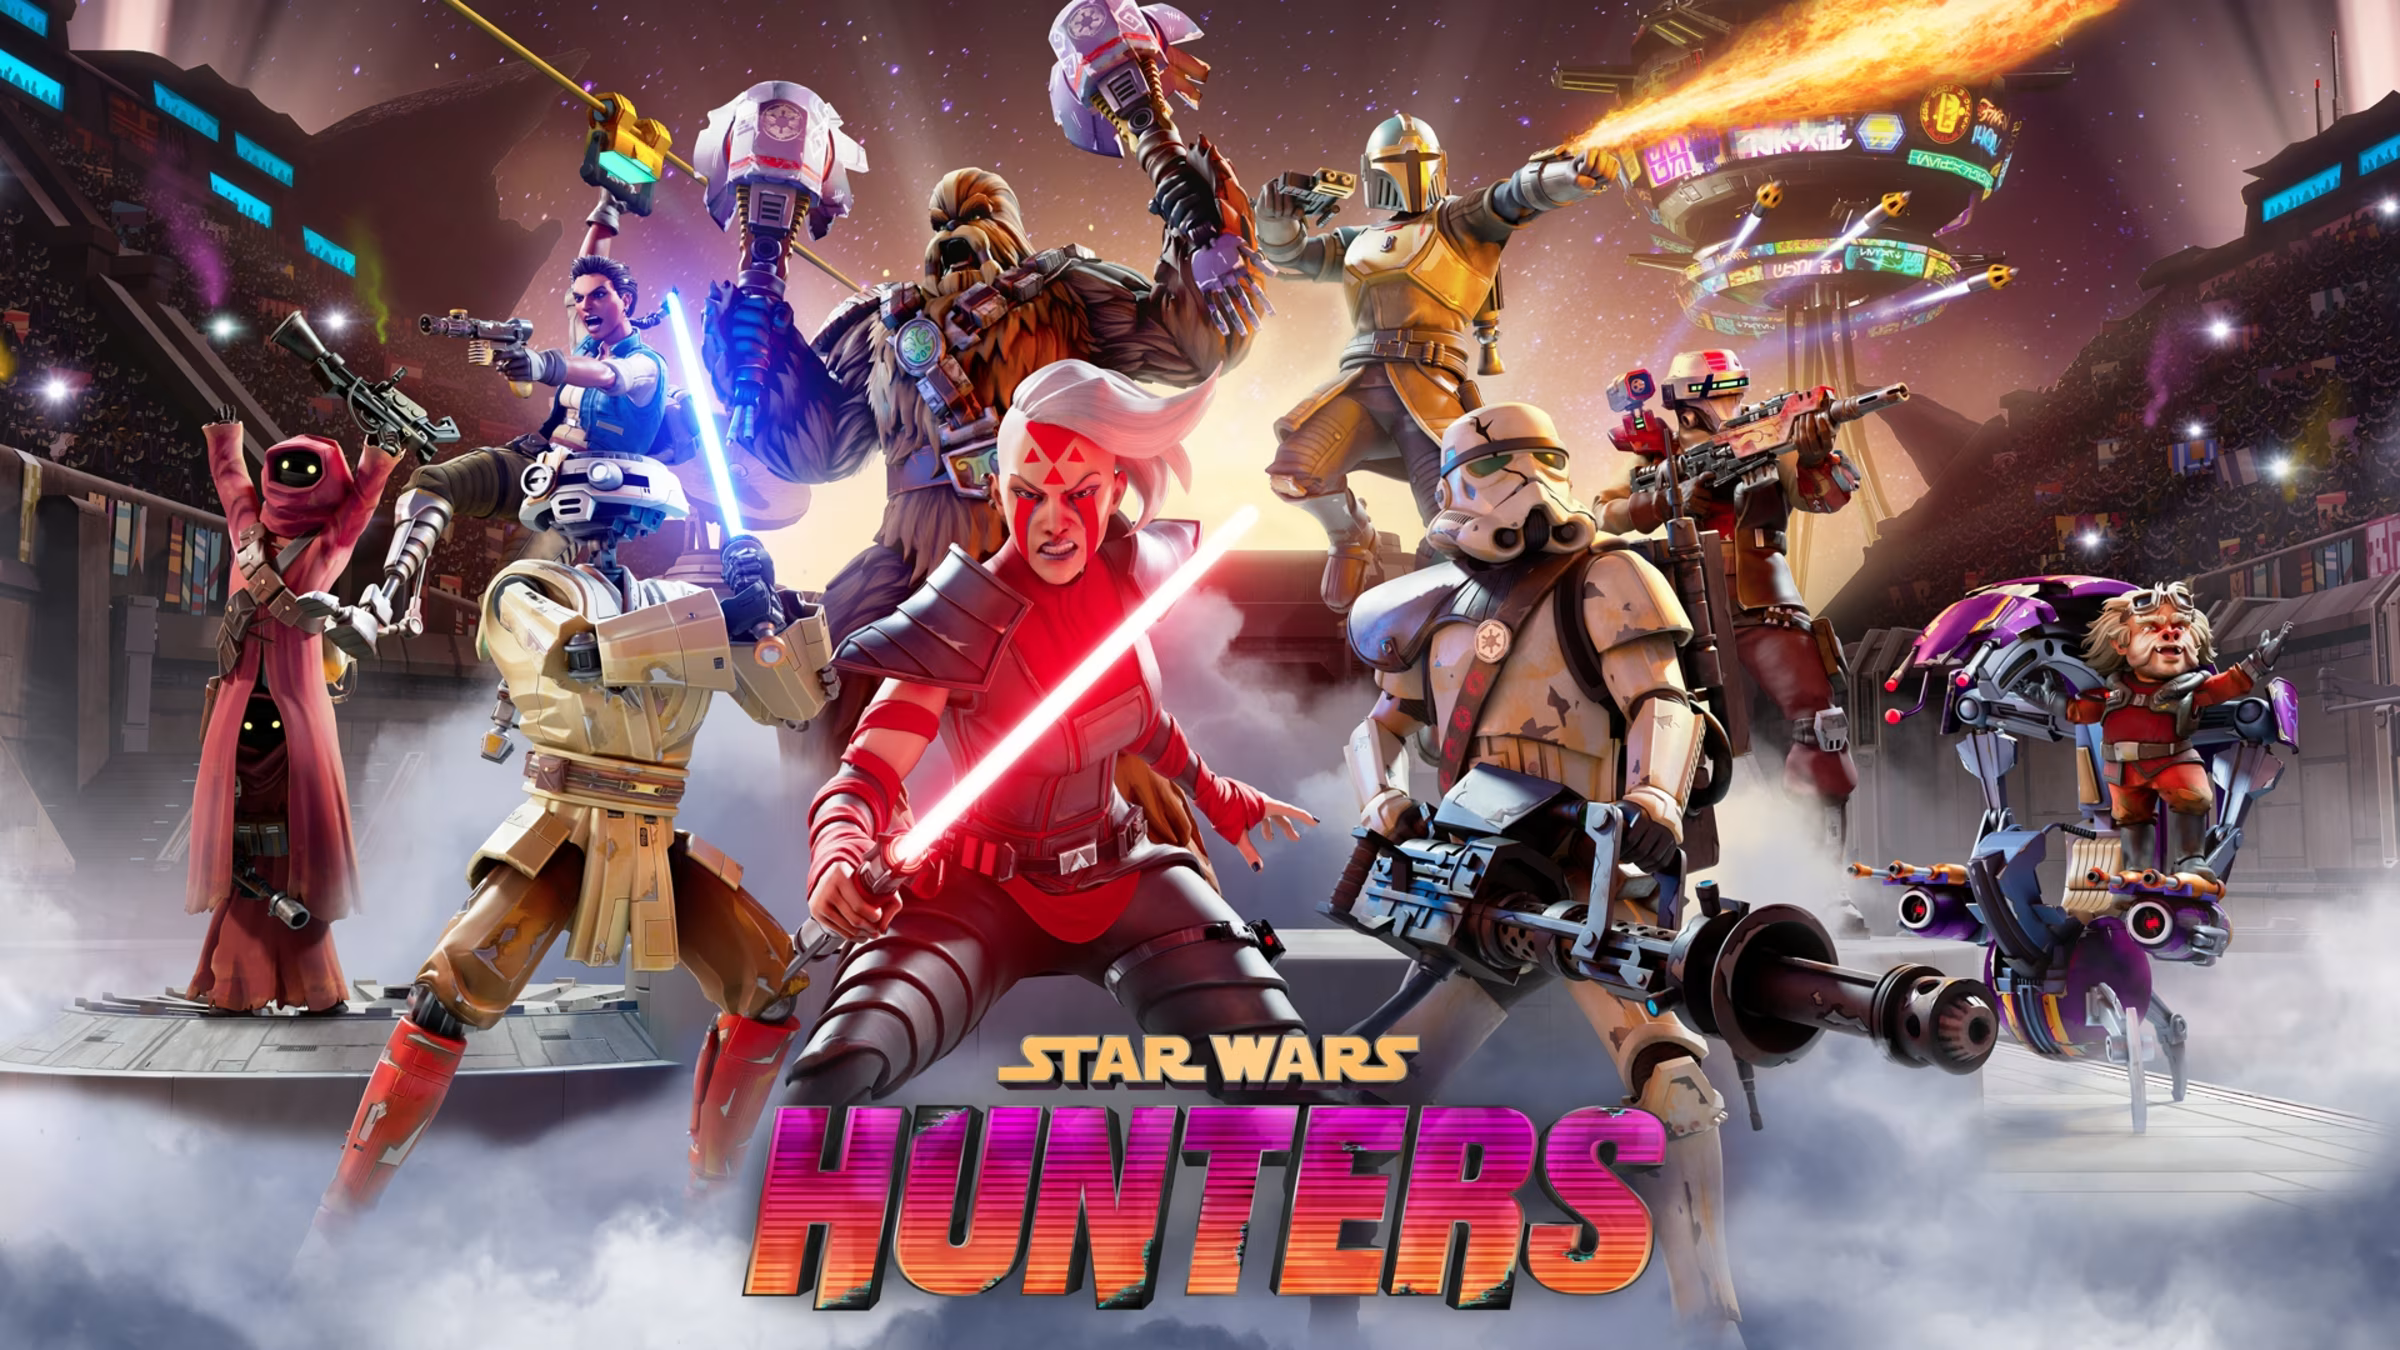 Star Wars: Hunters - La Emocionante Batalla Multijugador en el Universo de Star Wars image